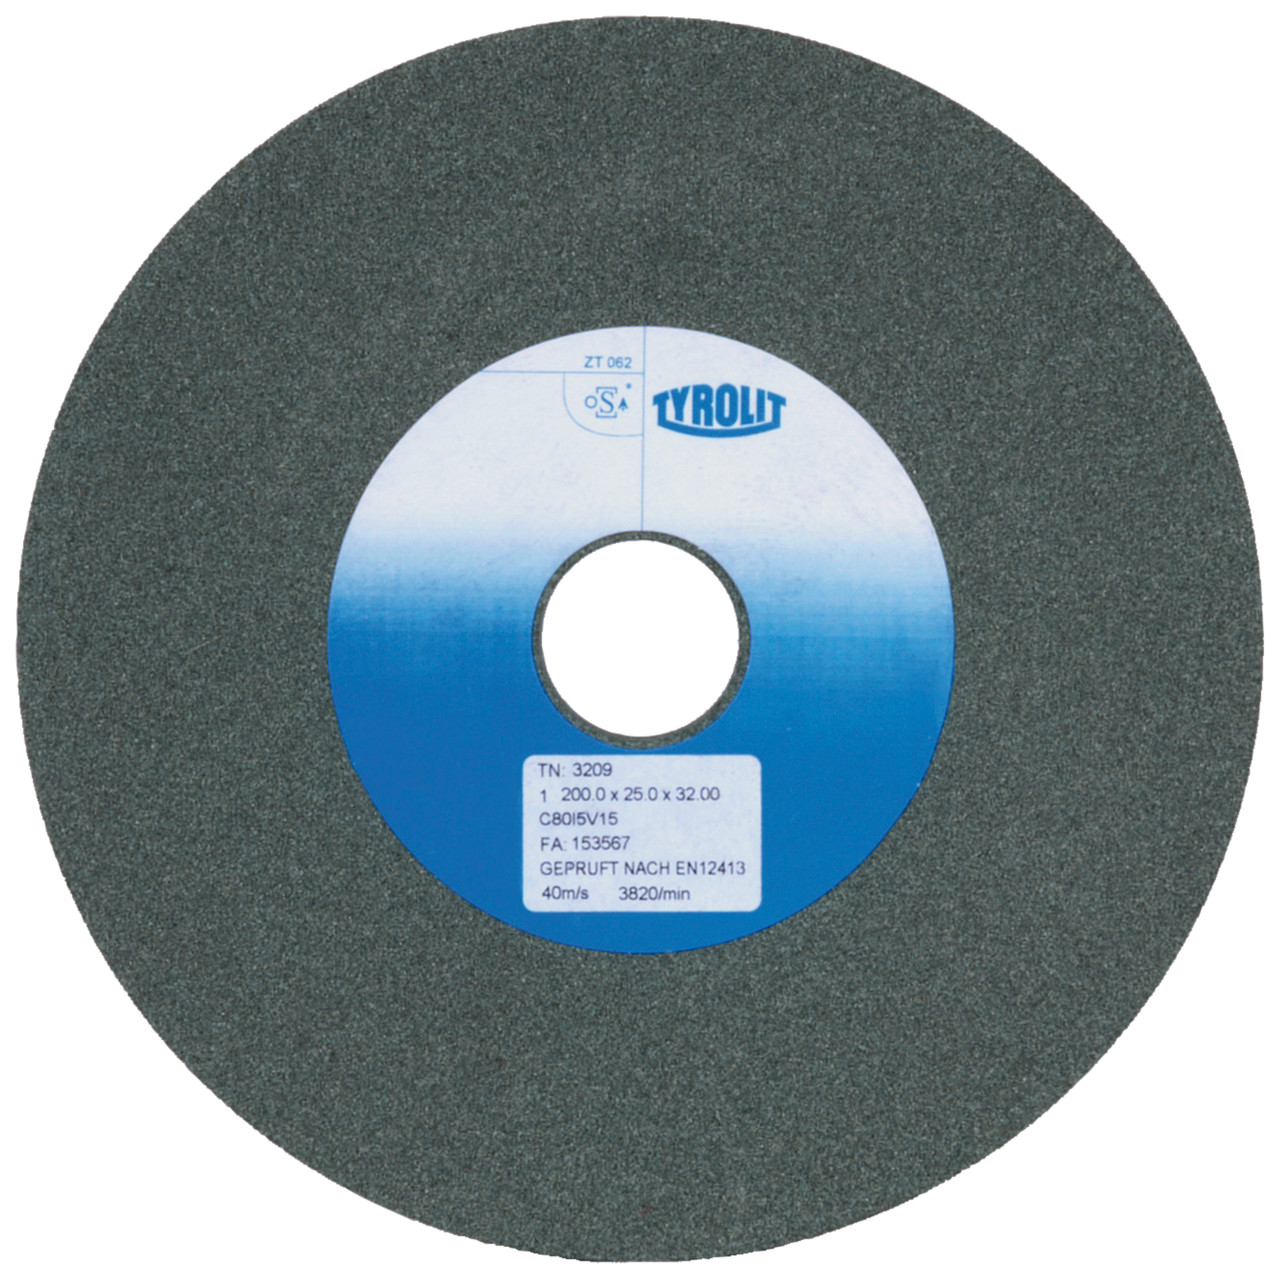 TYROLIT discos abrasivos cerámicos convencionales DxDxH 125x15x32 Para metal duro y fundición, forma: 1, Art. 706631